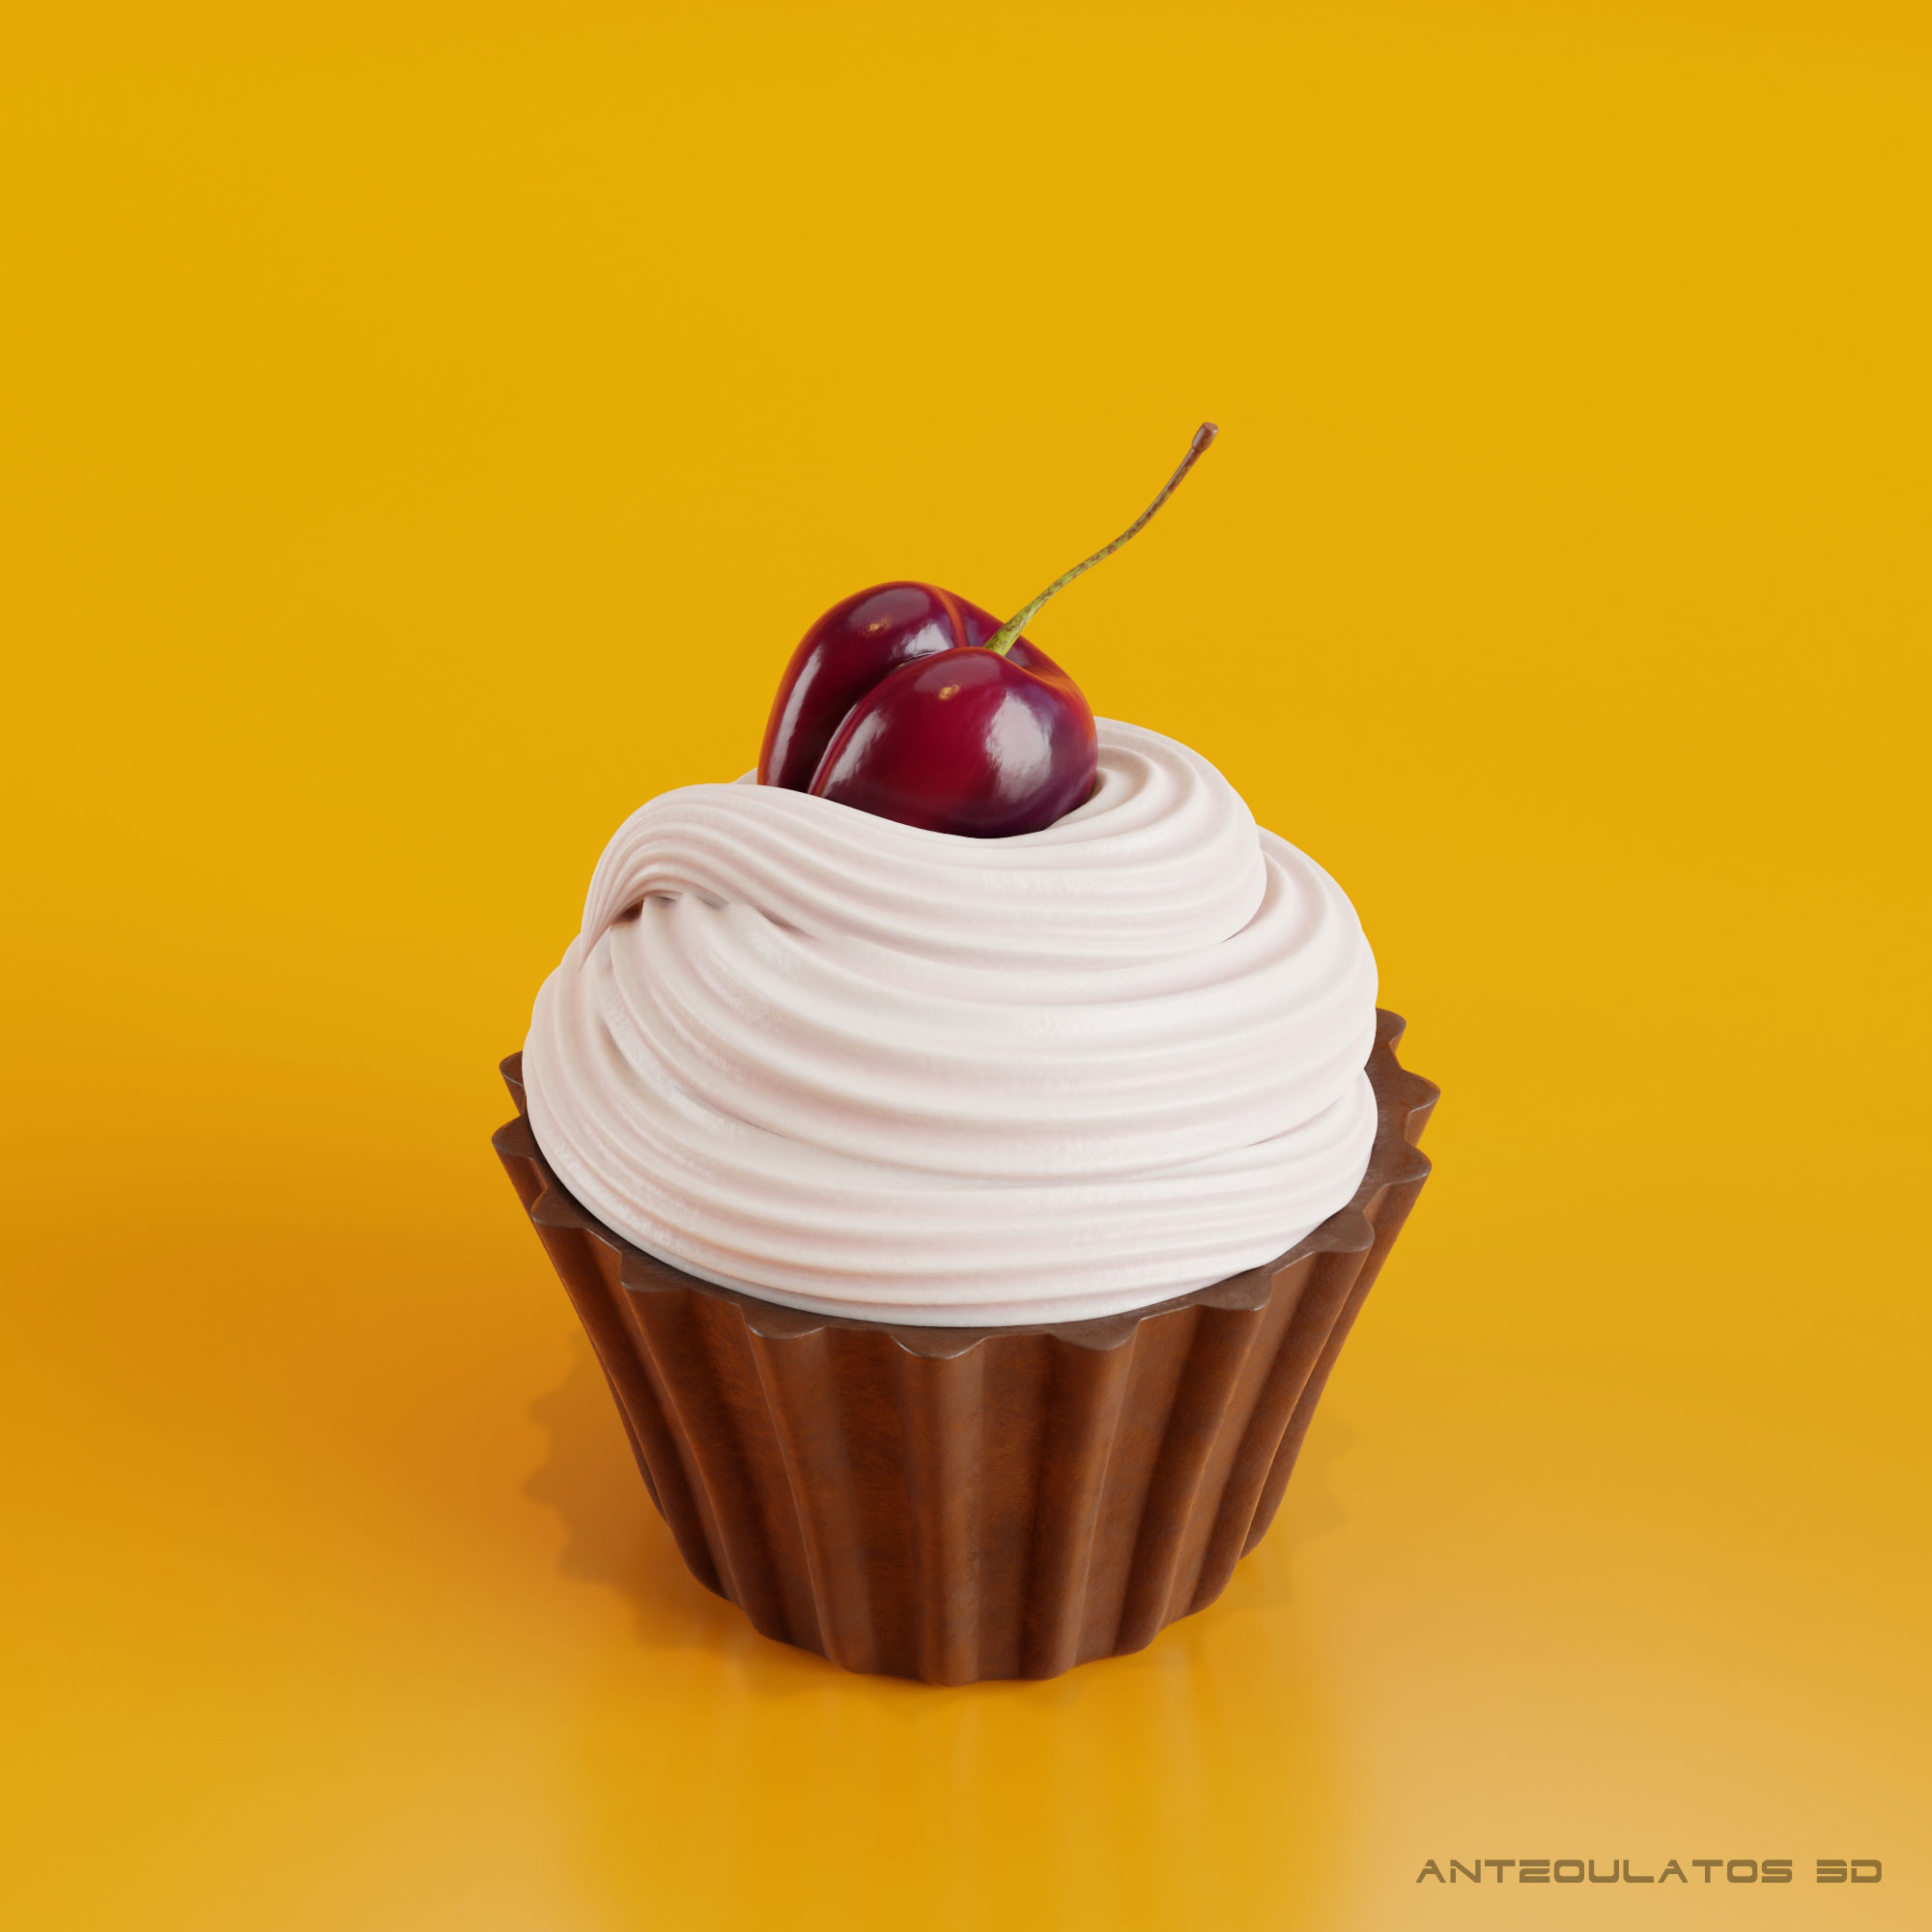 Cupcake - Vanilla cream with Cherry